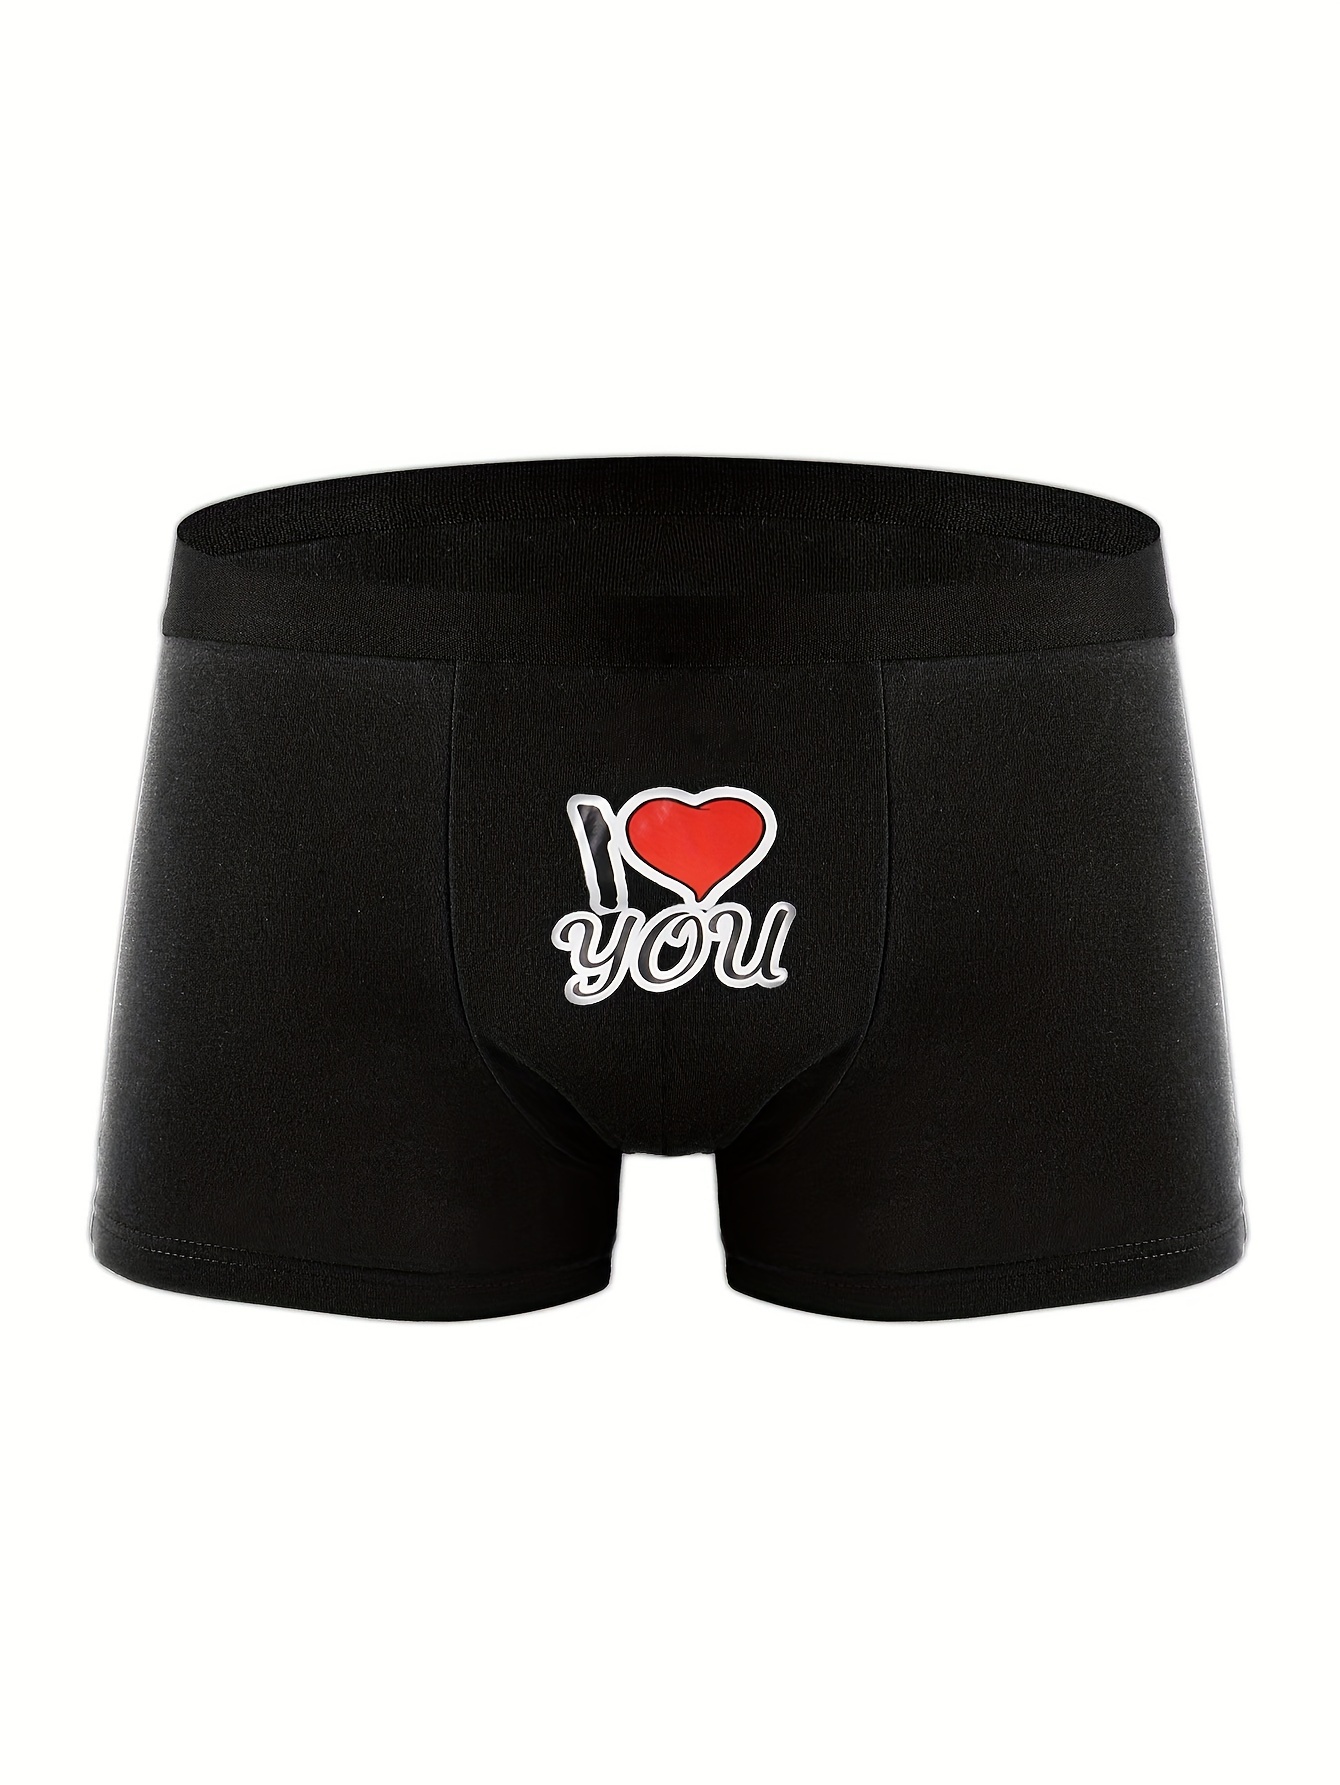 Man Heart Love Underwear Romantic Valentines Day Sexy Boxer Briefs